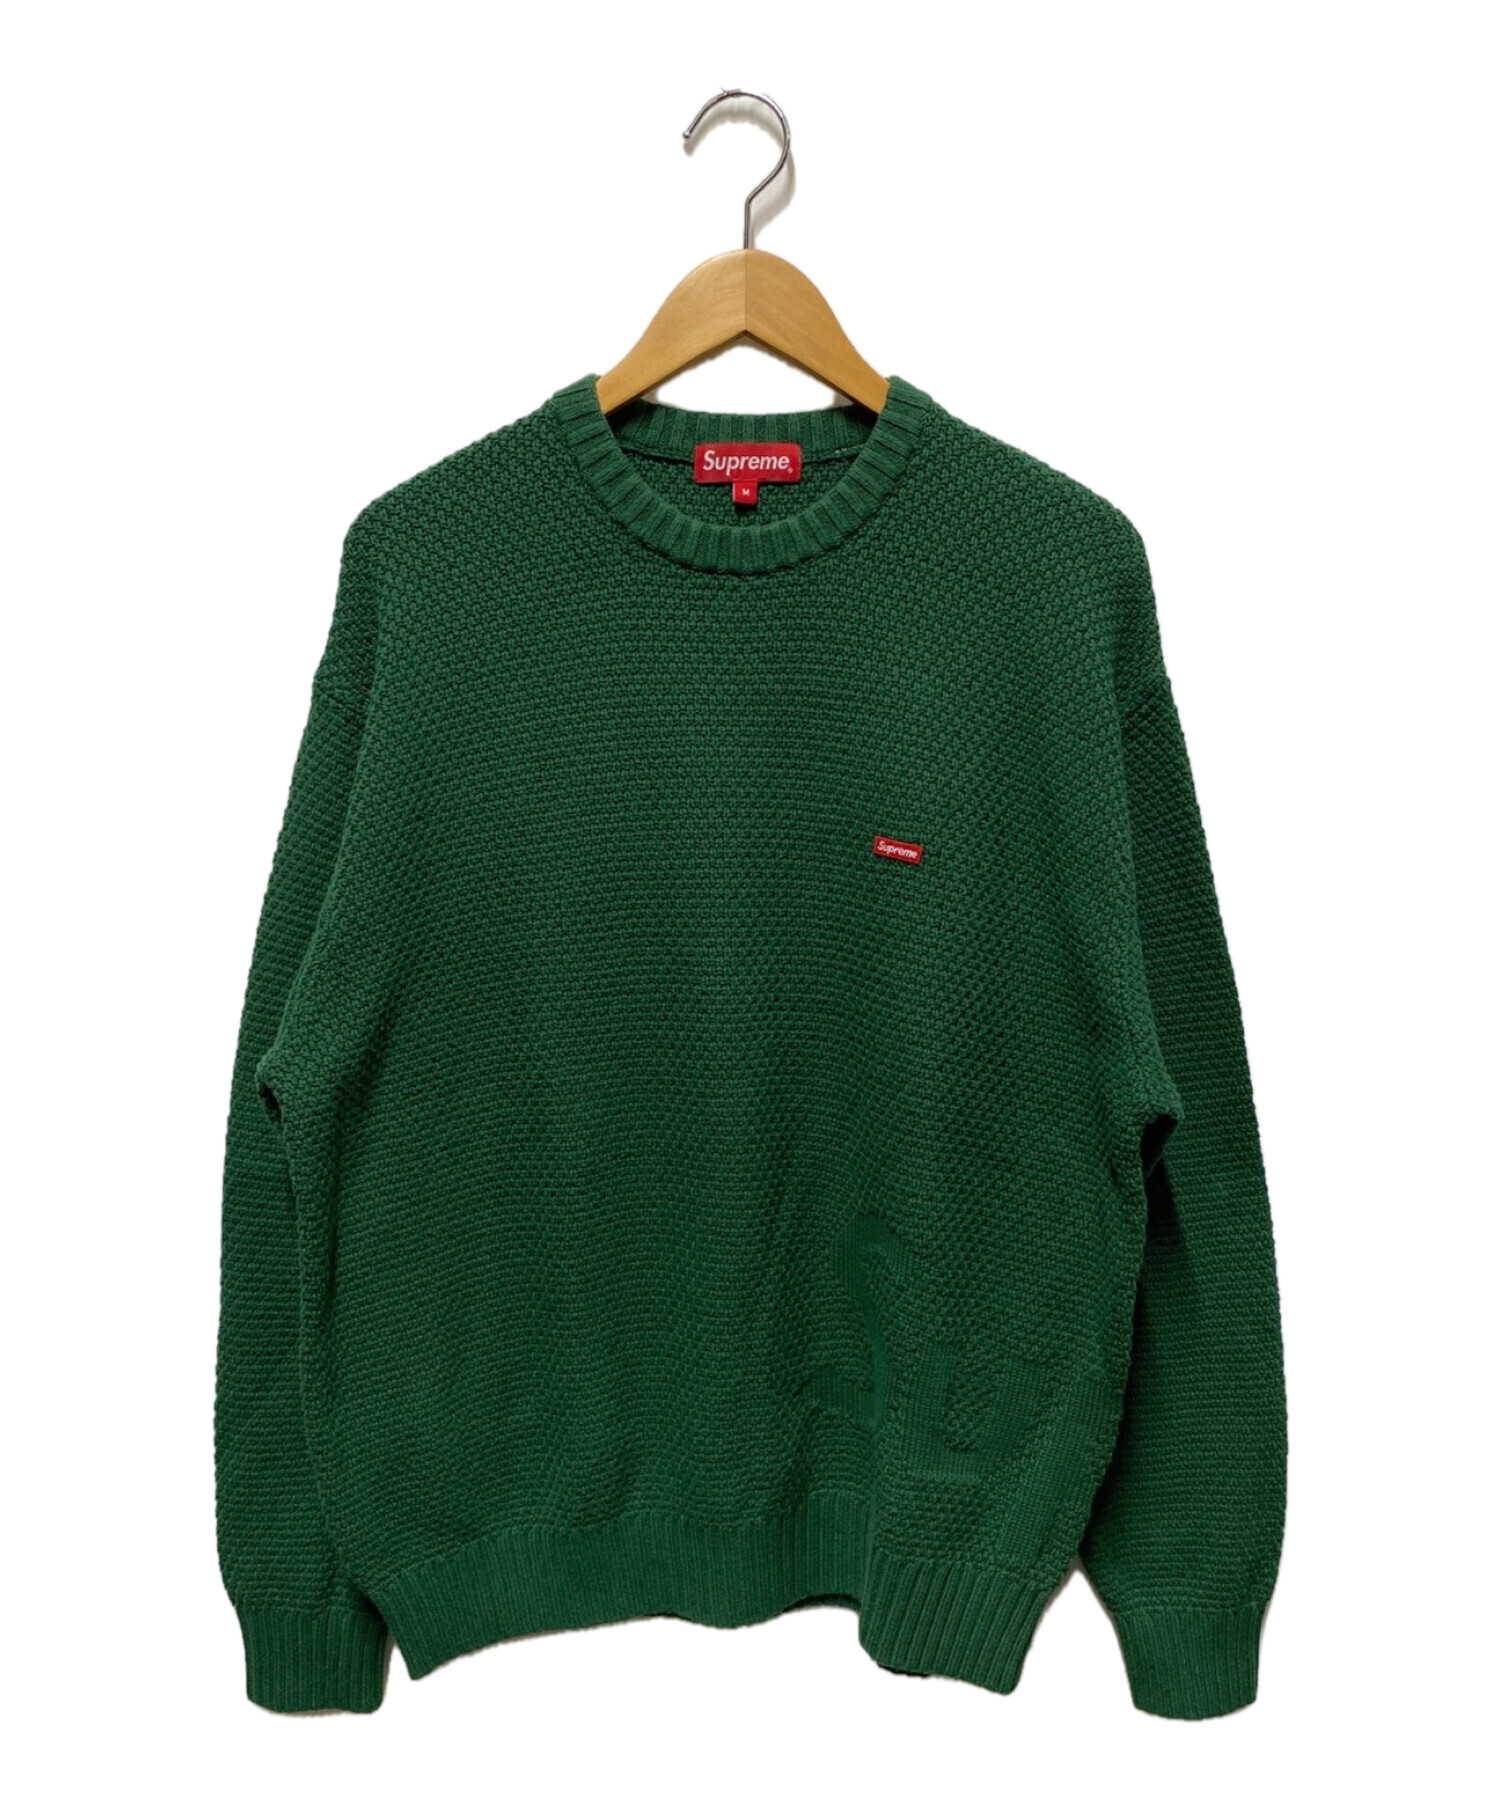 Supreme20FW Textured Small Box Sweater L